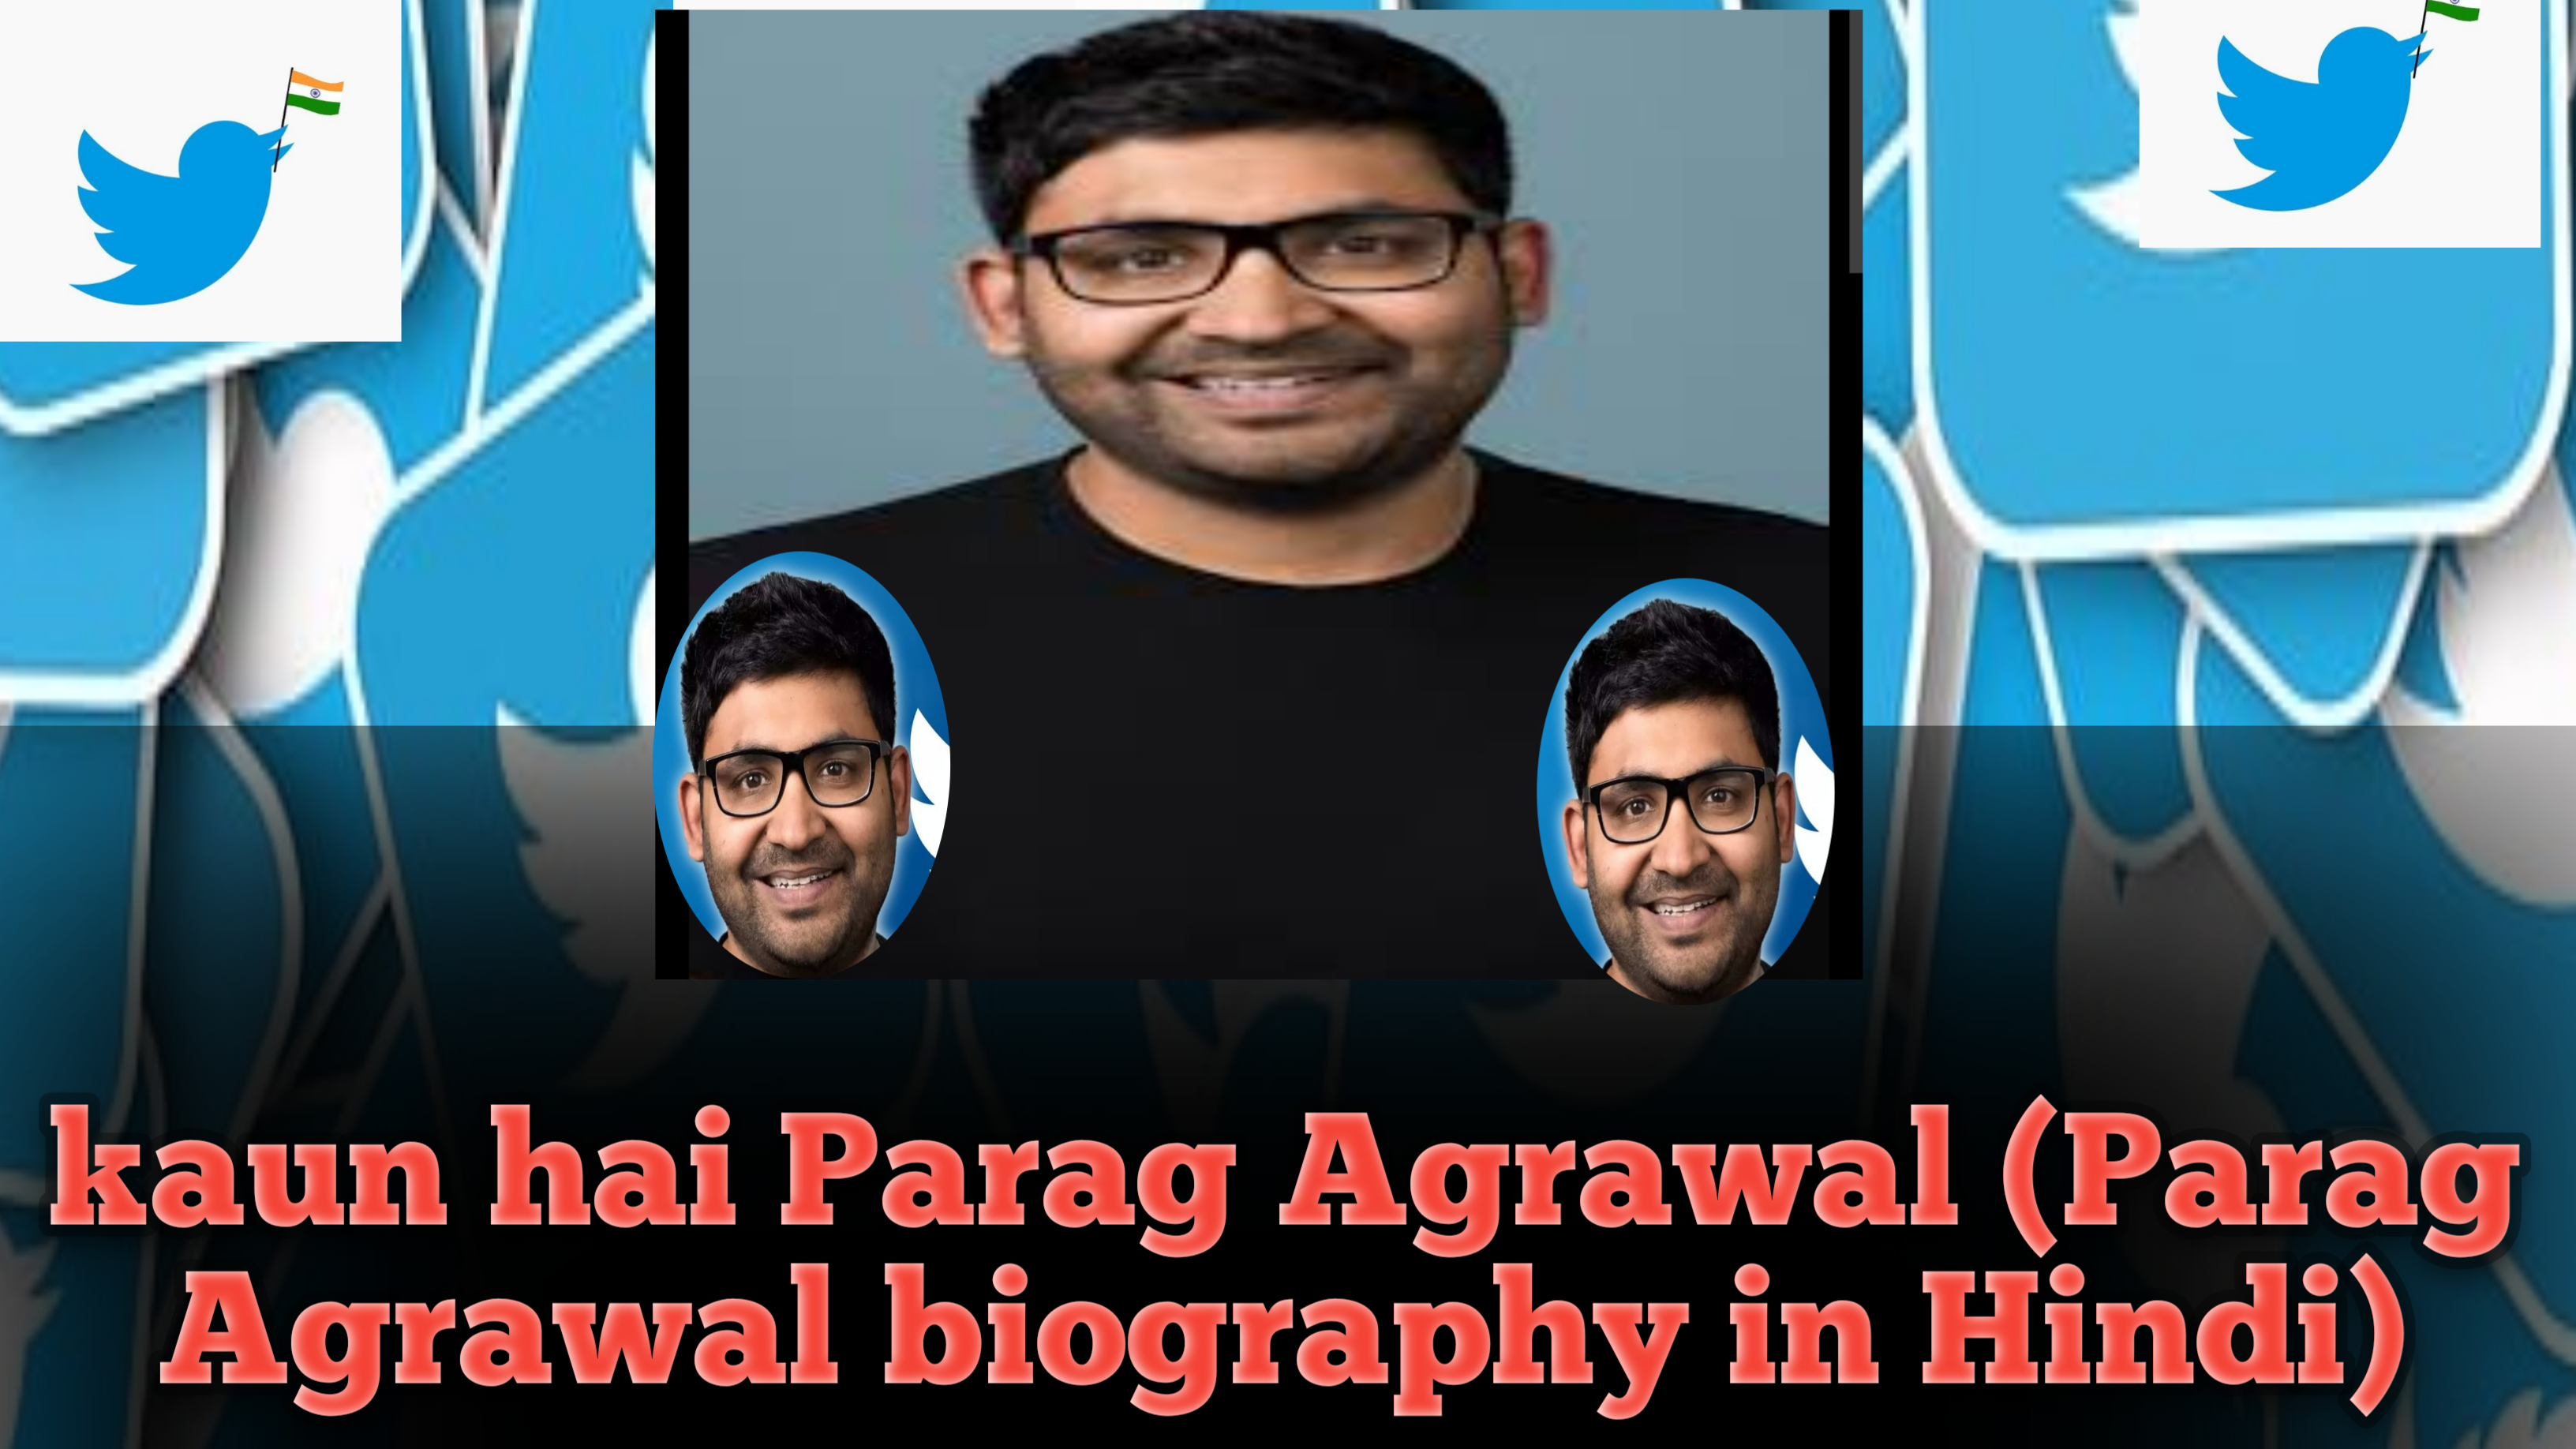 Kaun hai Parag Agrawal(Parag Agrawal biography in Hindi)